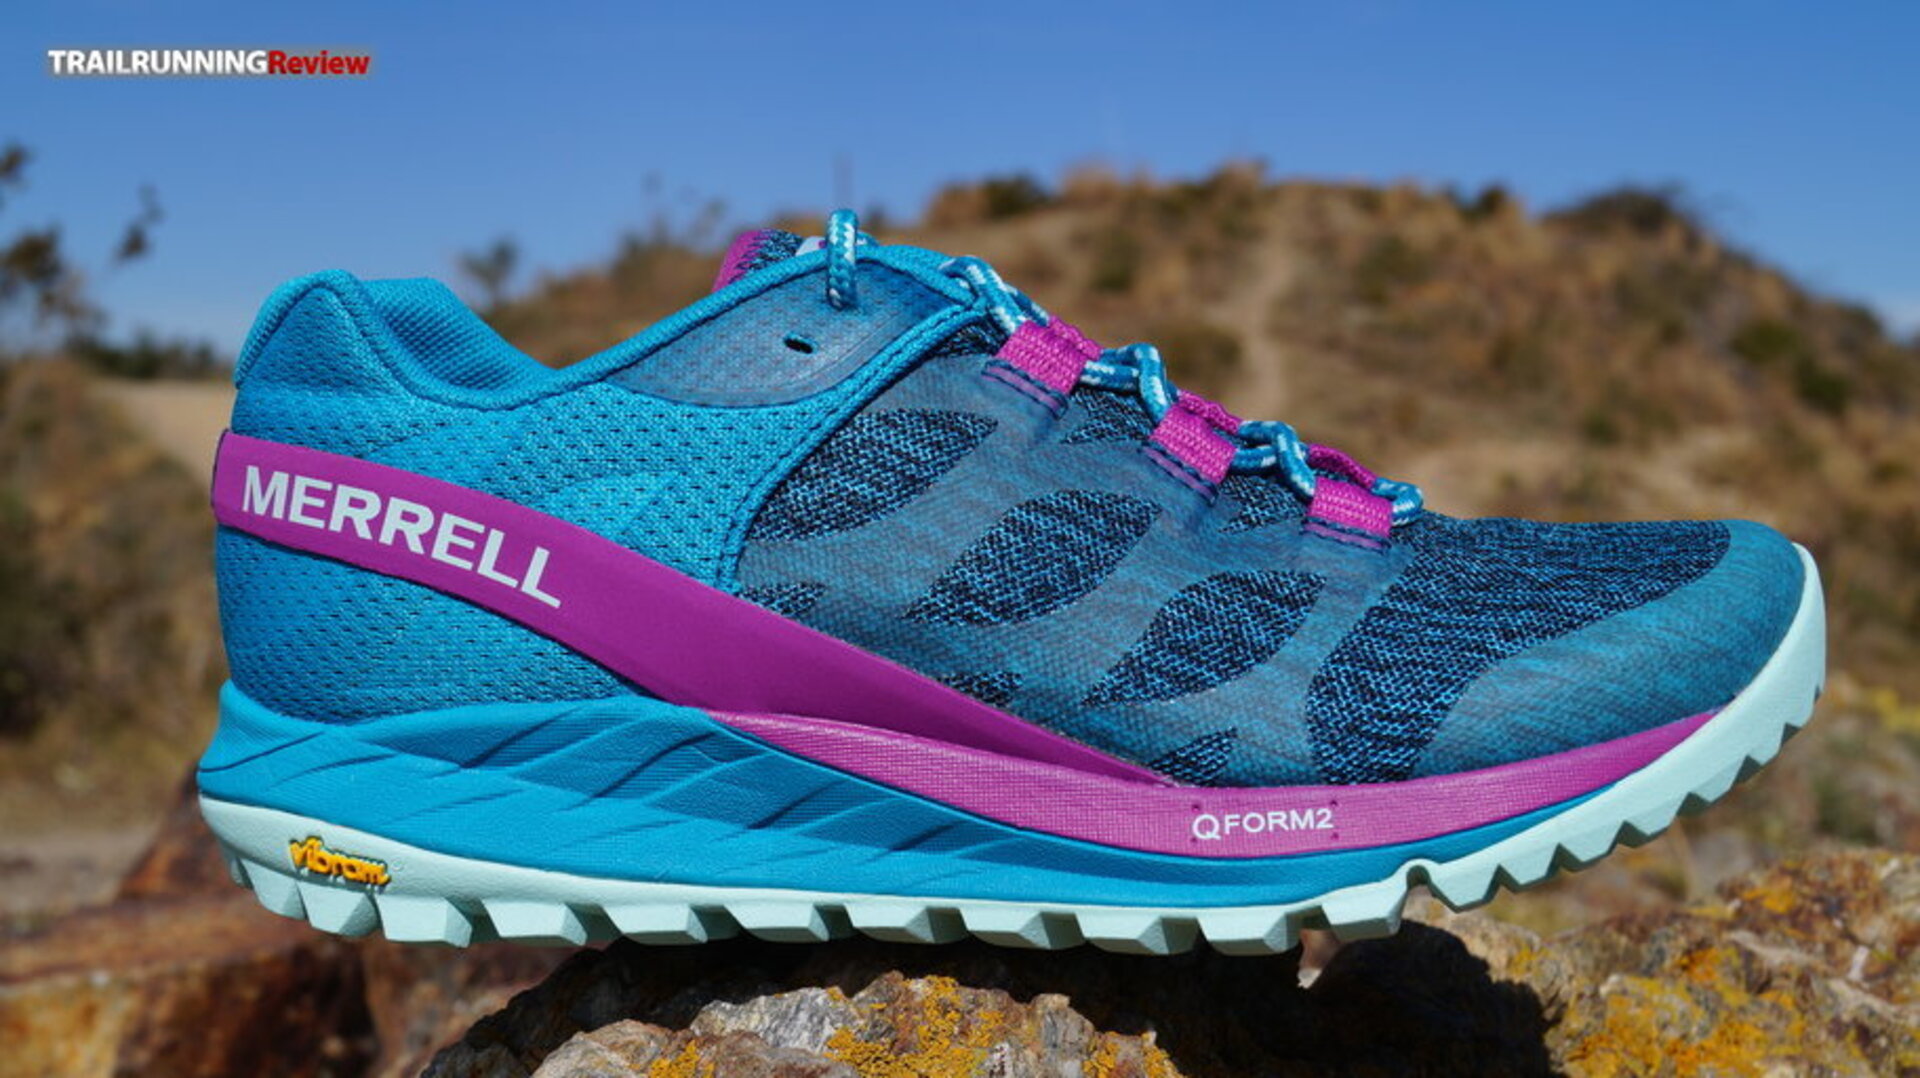 Merrell Antora Review - La zapatilla de Trail Running específica para mujer  